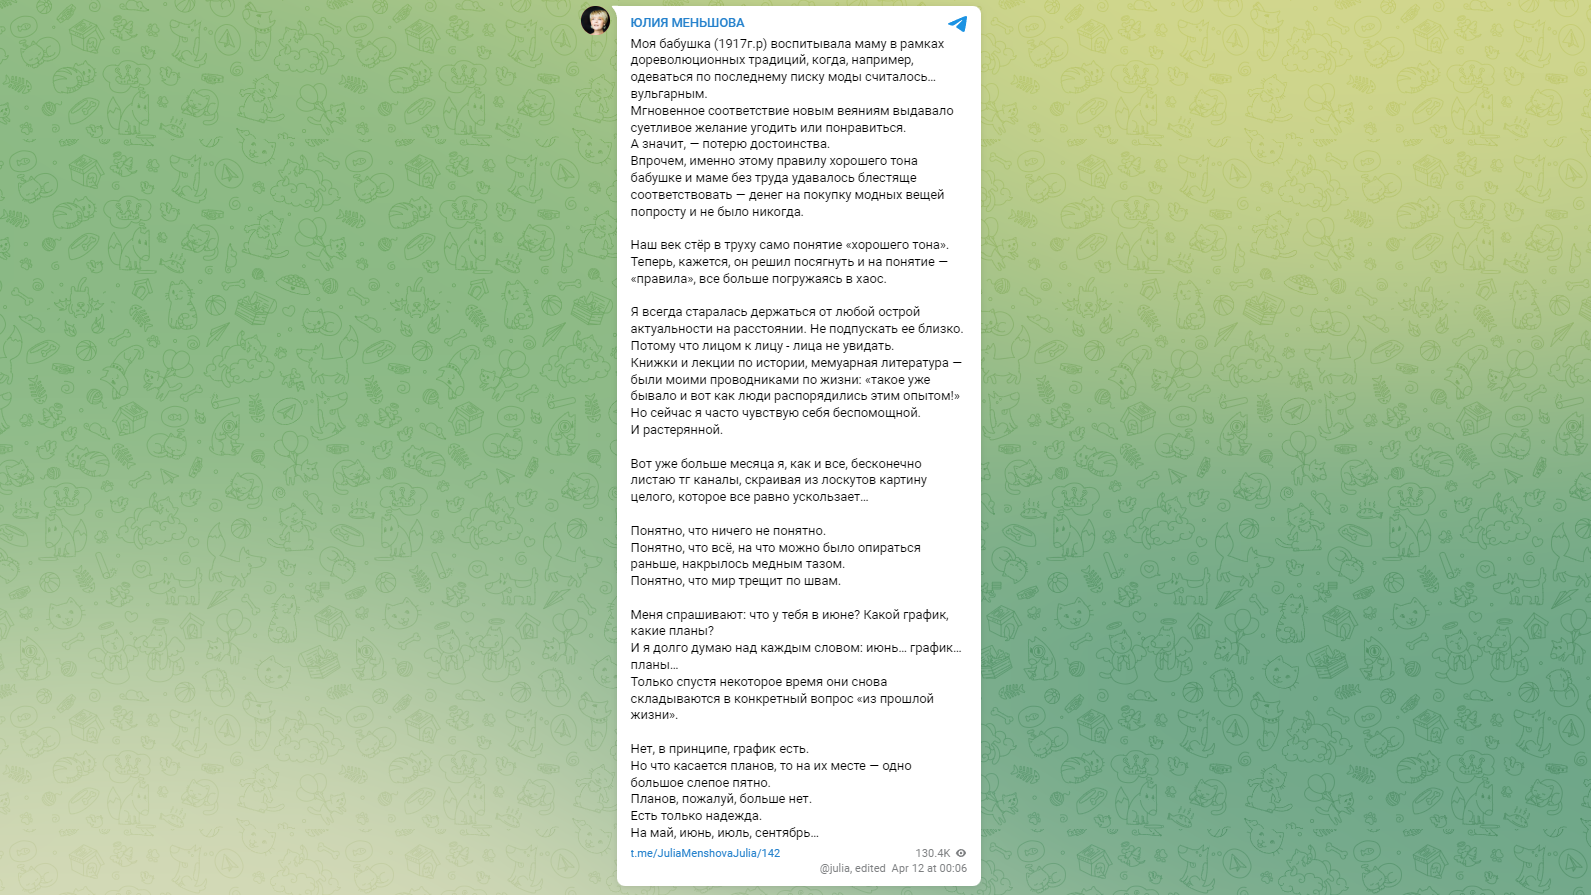 «Мир трещит по швам»: Юлия Меньшова пожаловалась на беспомощность - image 1